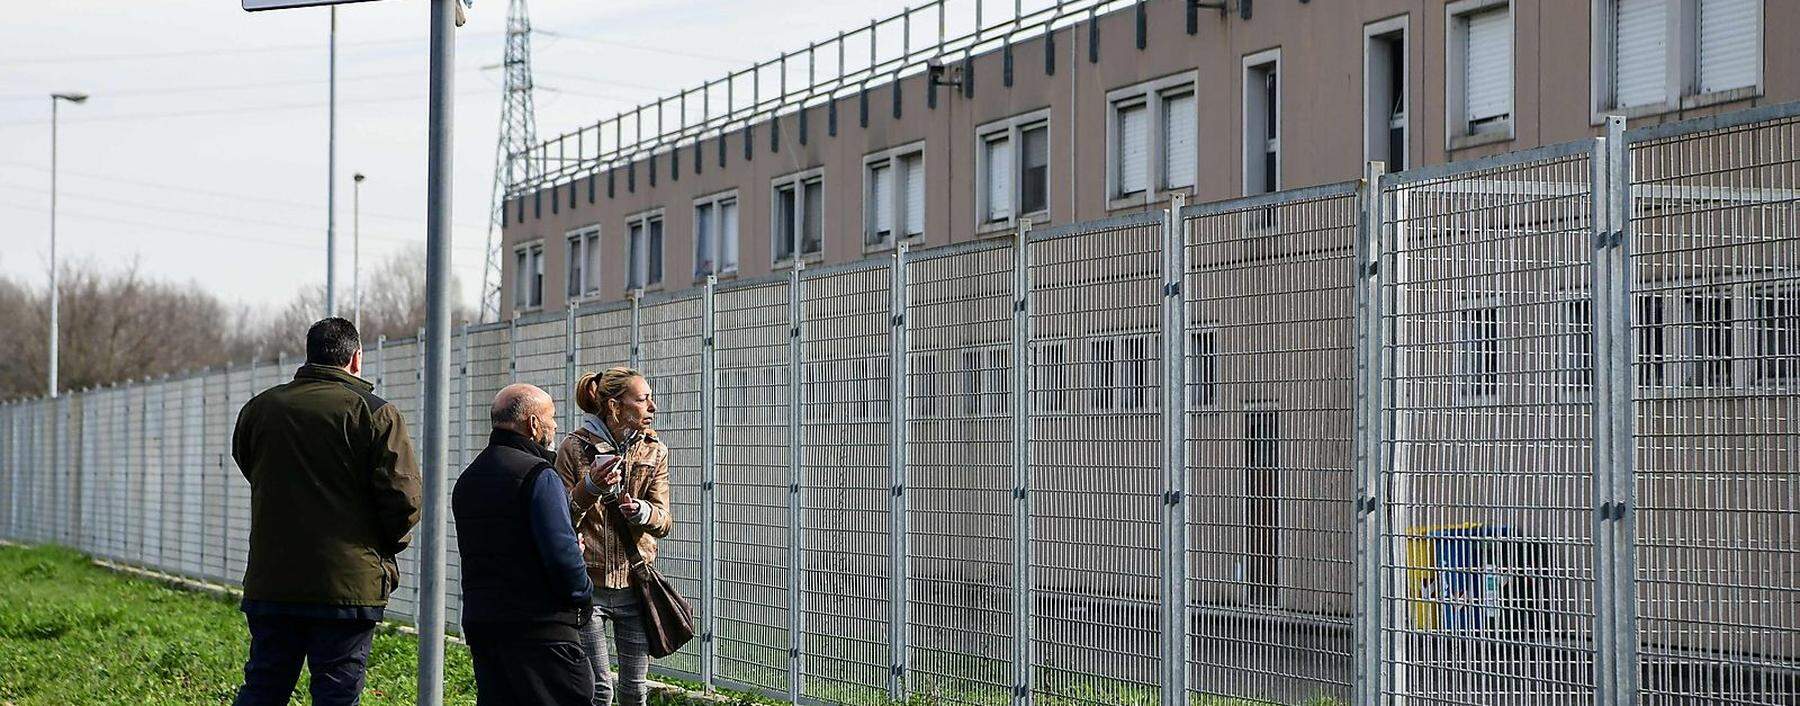 Angehörige von Insassen warten vor einem Gefängnis in Italien. Im Land kam es nach Ausbruch der Corona-Krise zu mehreren Gefängnisrevolten